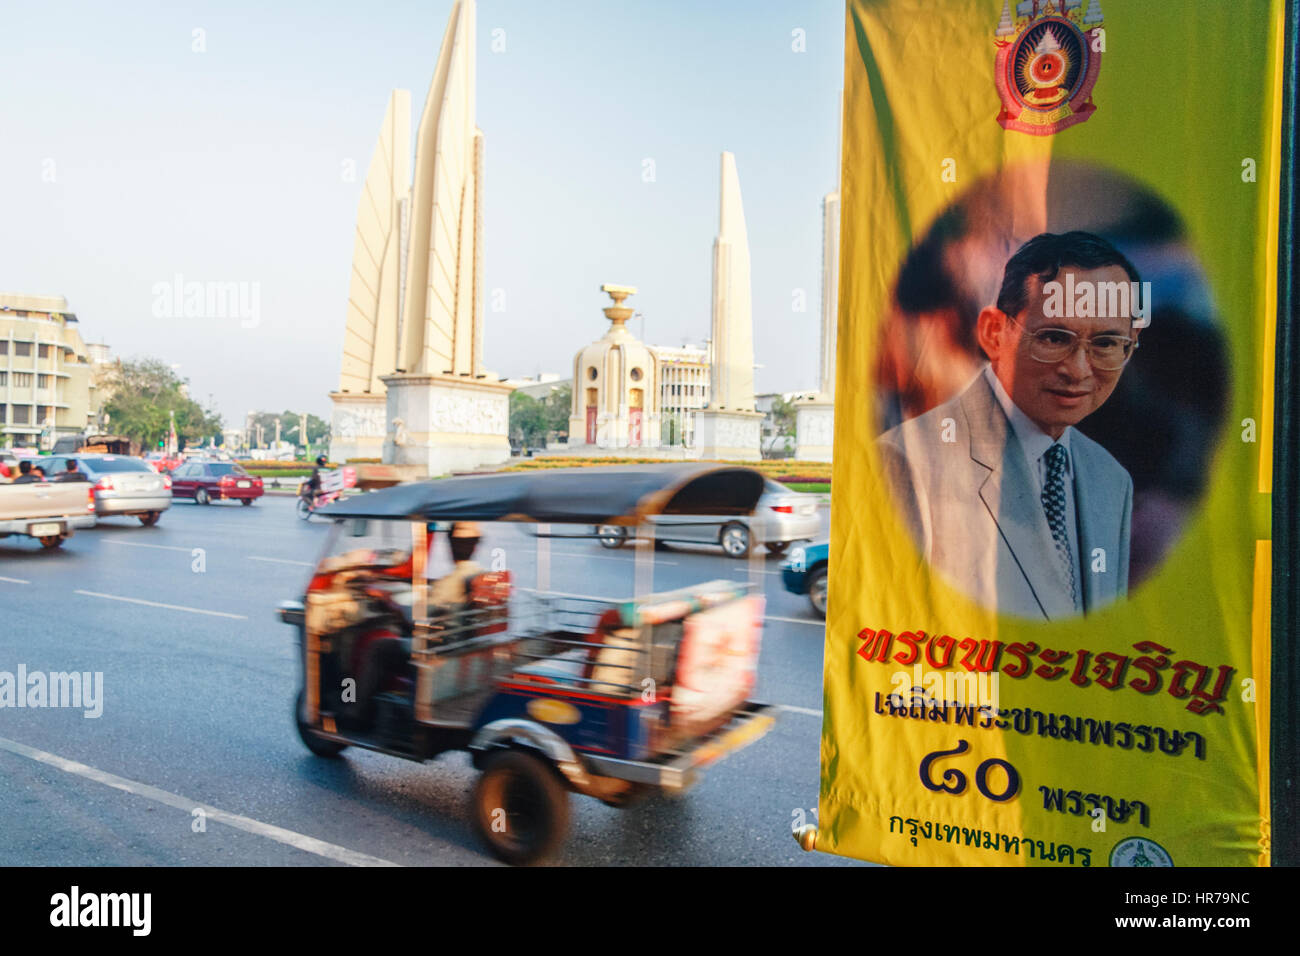 Le roi Bhumibol Adulyadej's banner et le Monument de la démocratie, commémorant le coup d'État. Siam 1932 Ratchadamnoen Road, Bangkok, Thaïlande, Asie du Sud-Est Banque D'Images